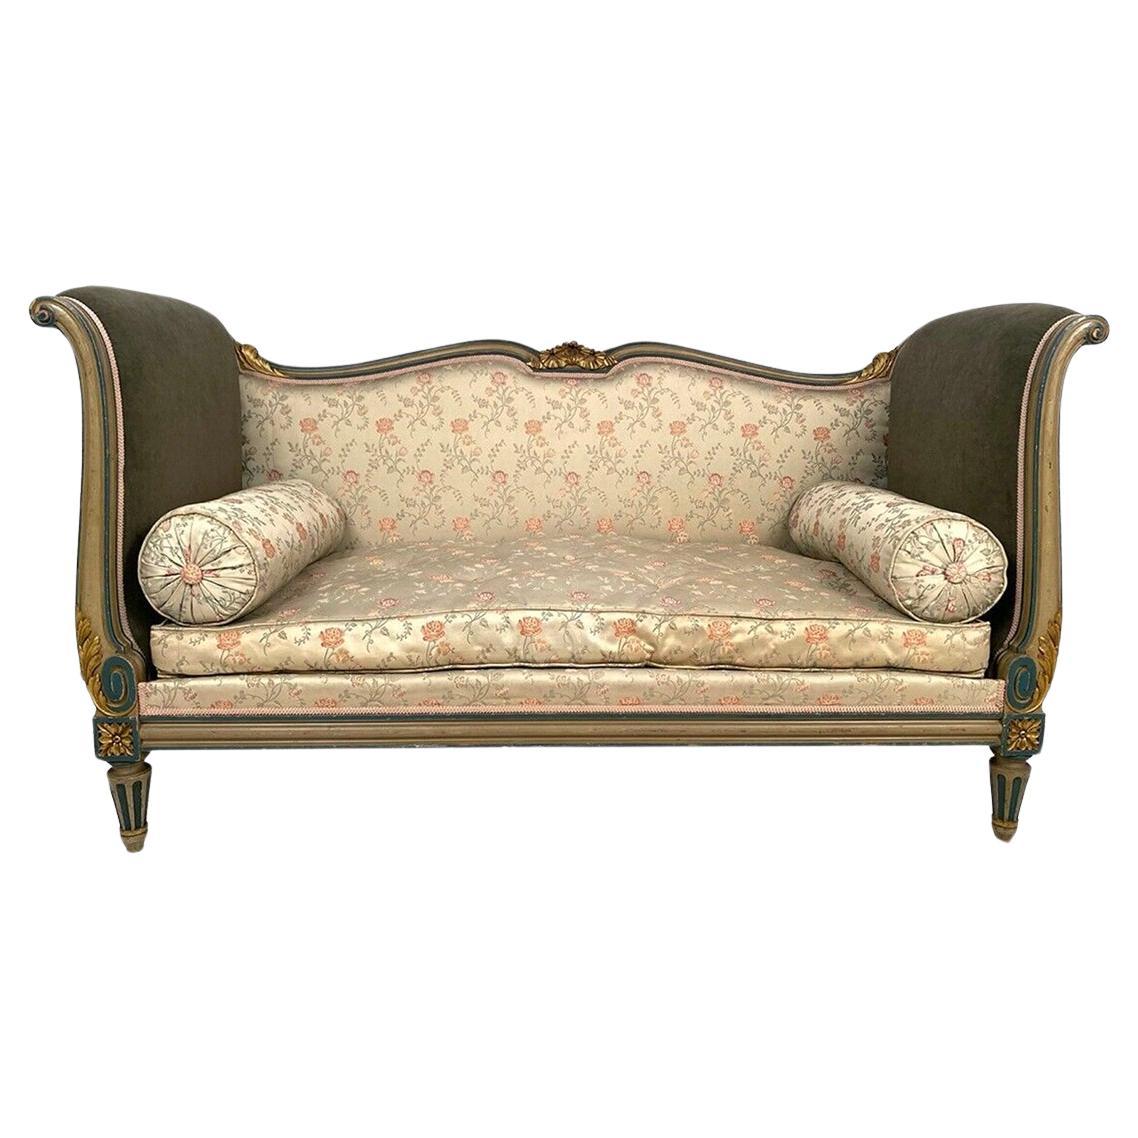 Canapé à joues de style Louis XVI, bois laqué gris/vert rechampi bleu et or.